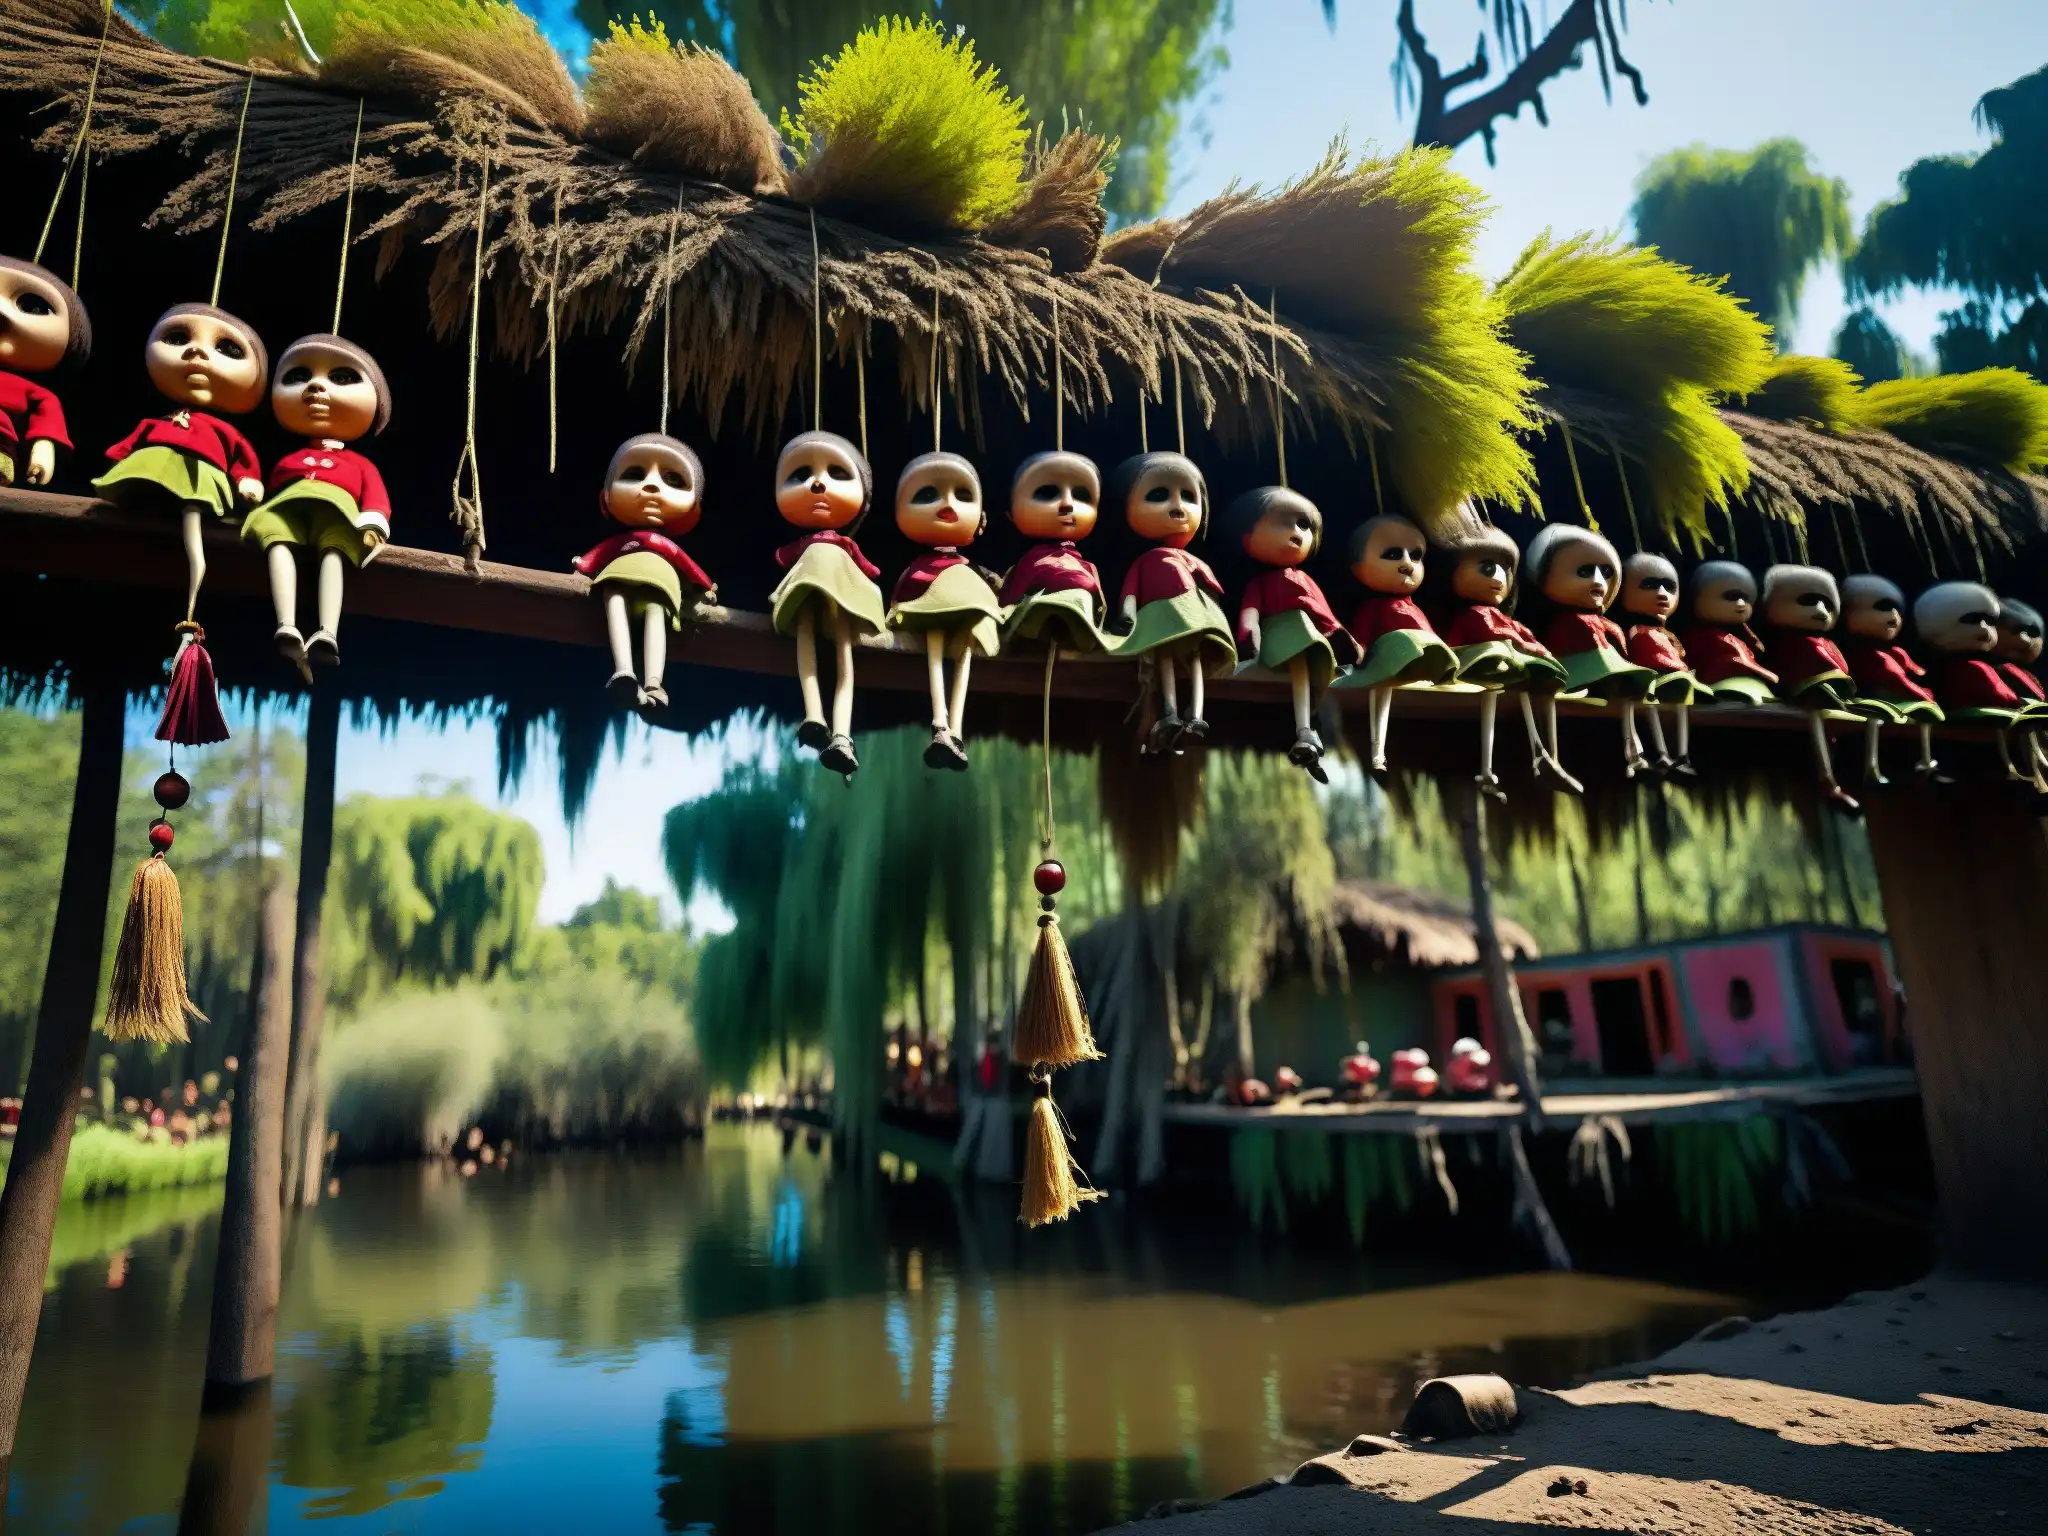 Imagen misteriosa de la Isla de las Muñecas en Xochimilco, con muñecas colgando entre la densa vegetación y un ambiente inquietante